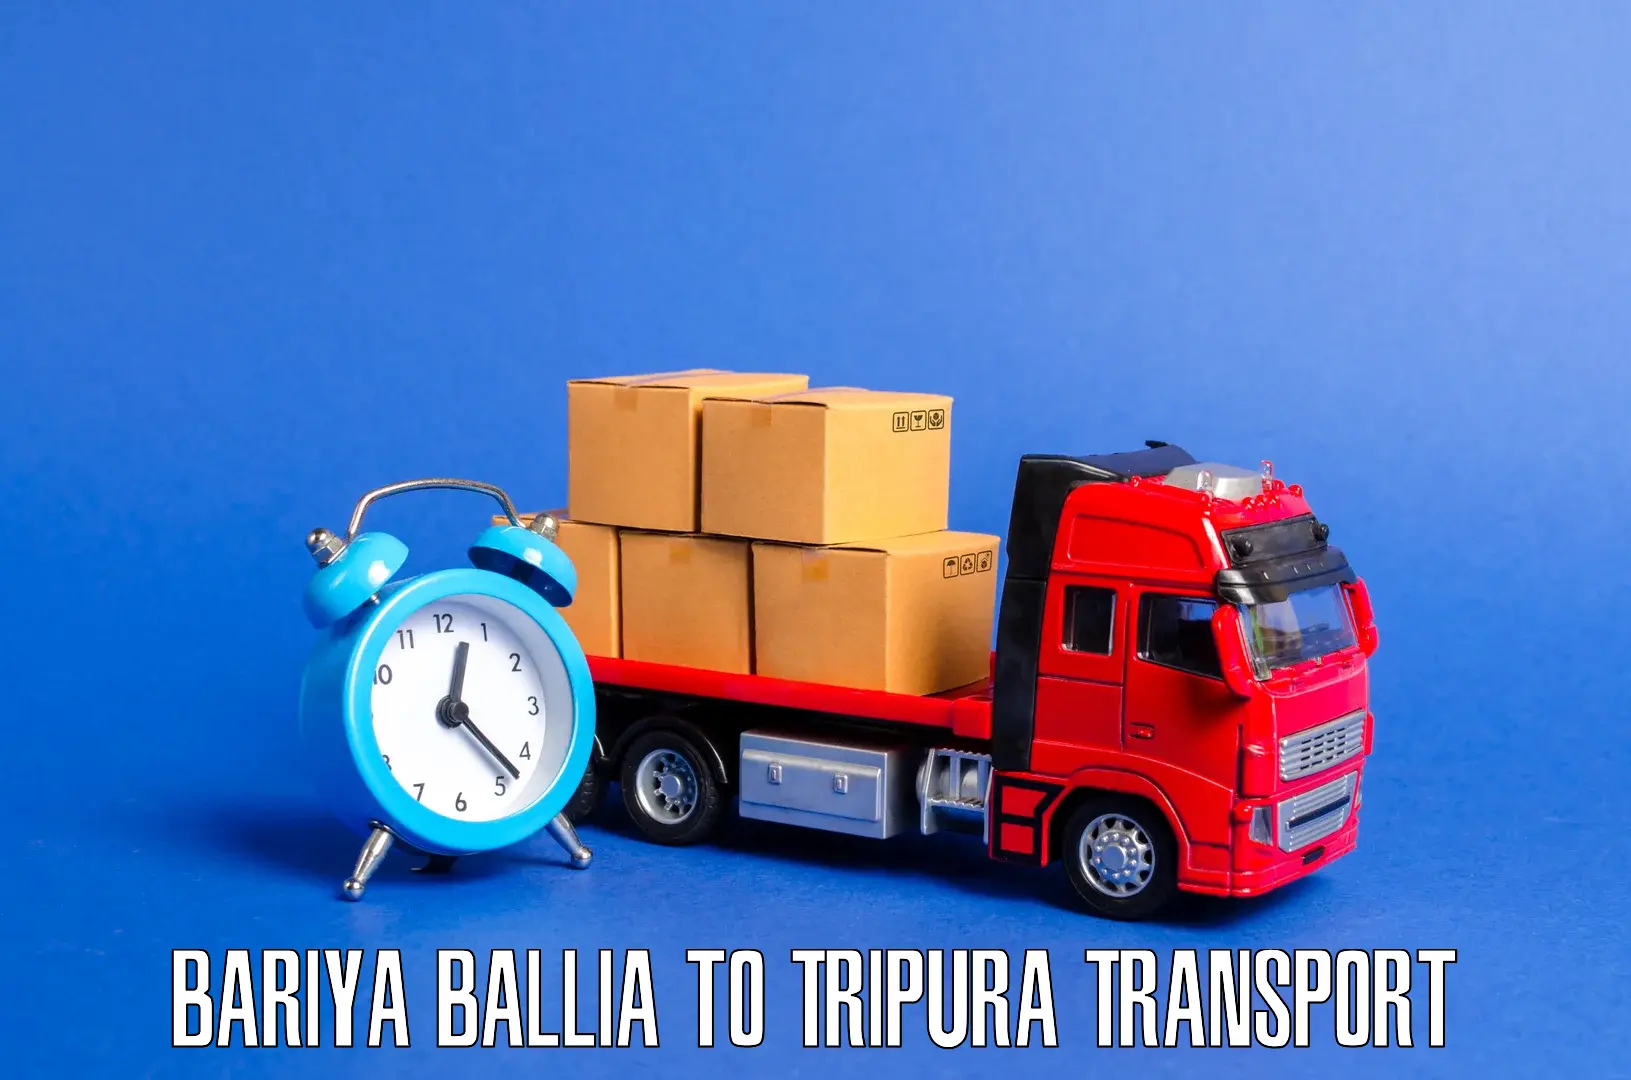 Daily transport service Bariya Ballia to Dharmanagar